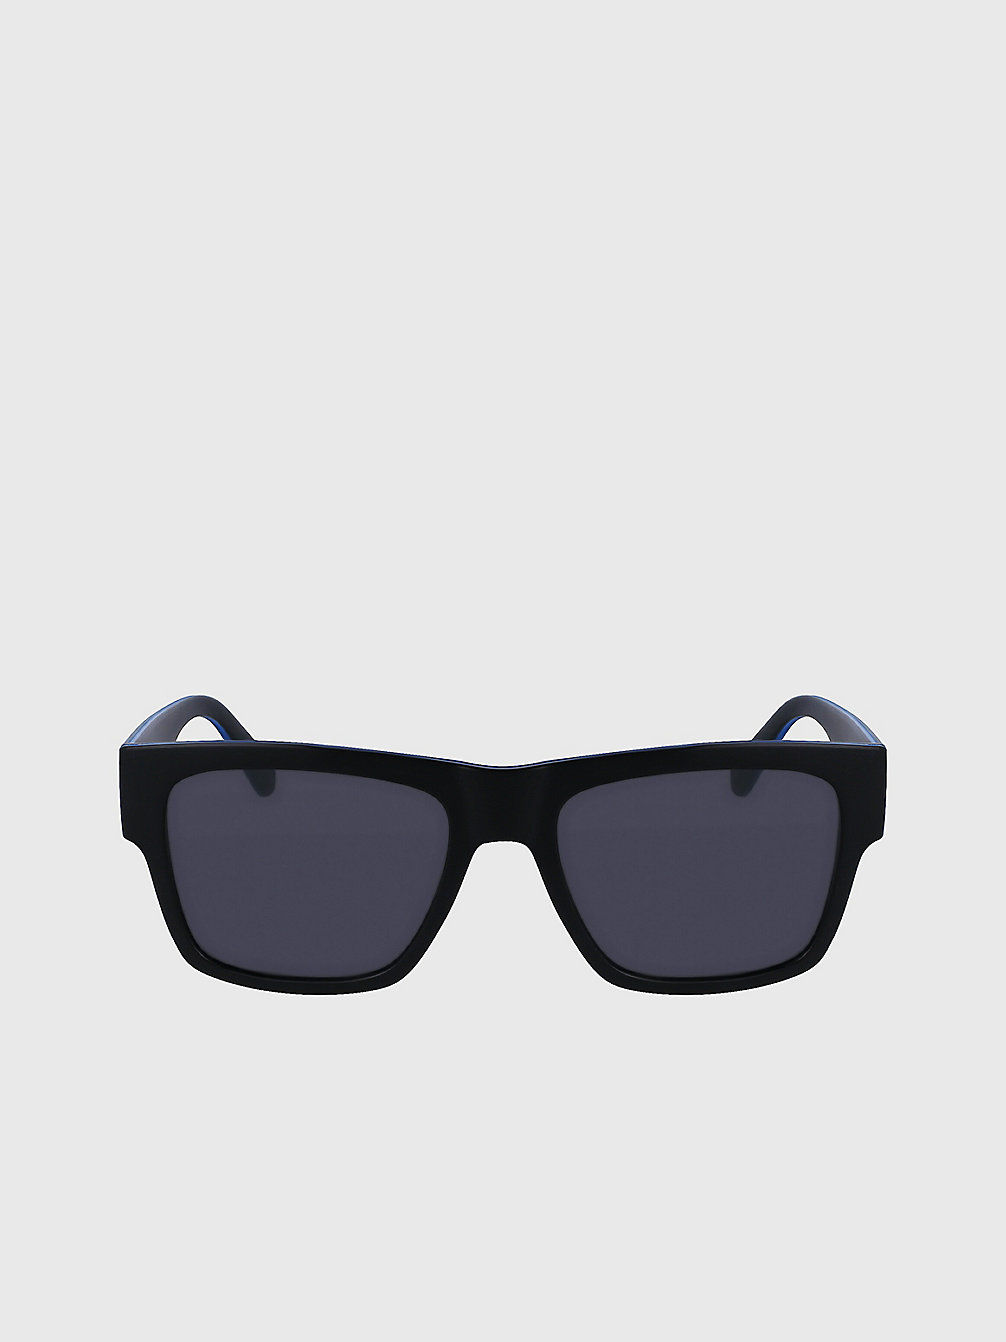 BLACK > Rechteckige Sonnenbrille Ckj23605s > undefined Herren - Calvin Klein